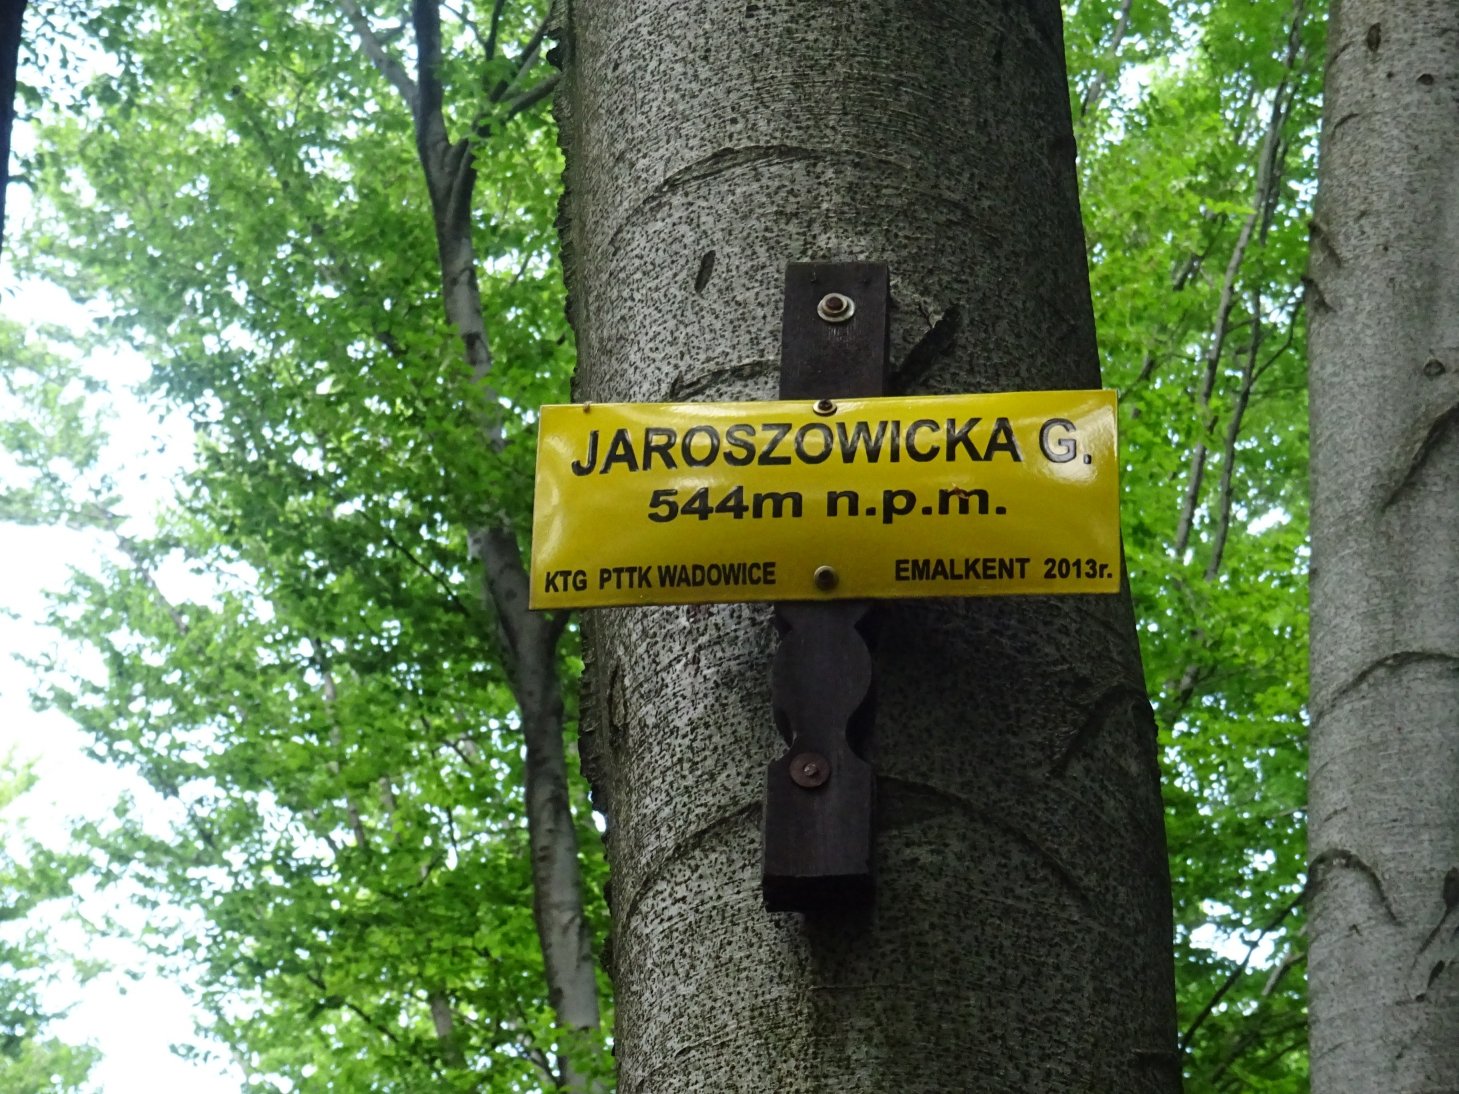 Jaroszowicka Góra